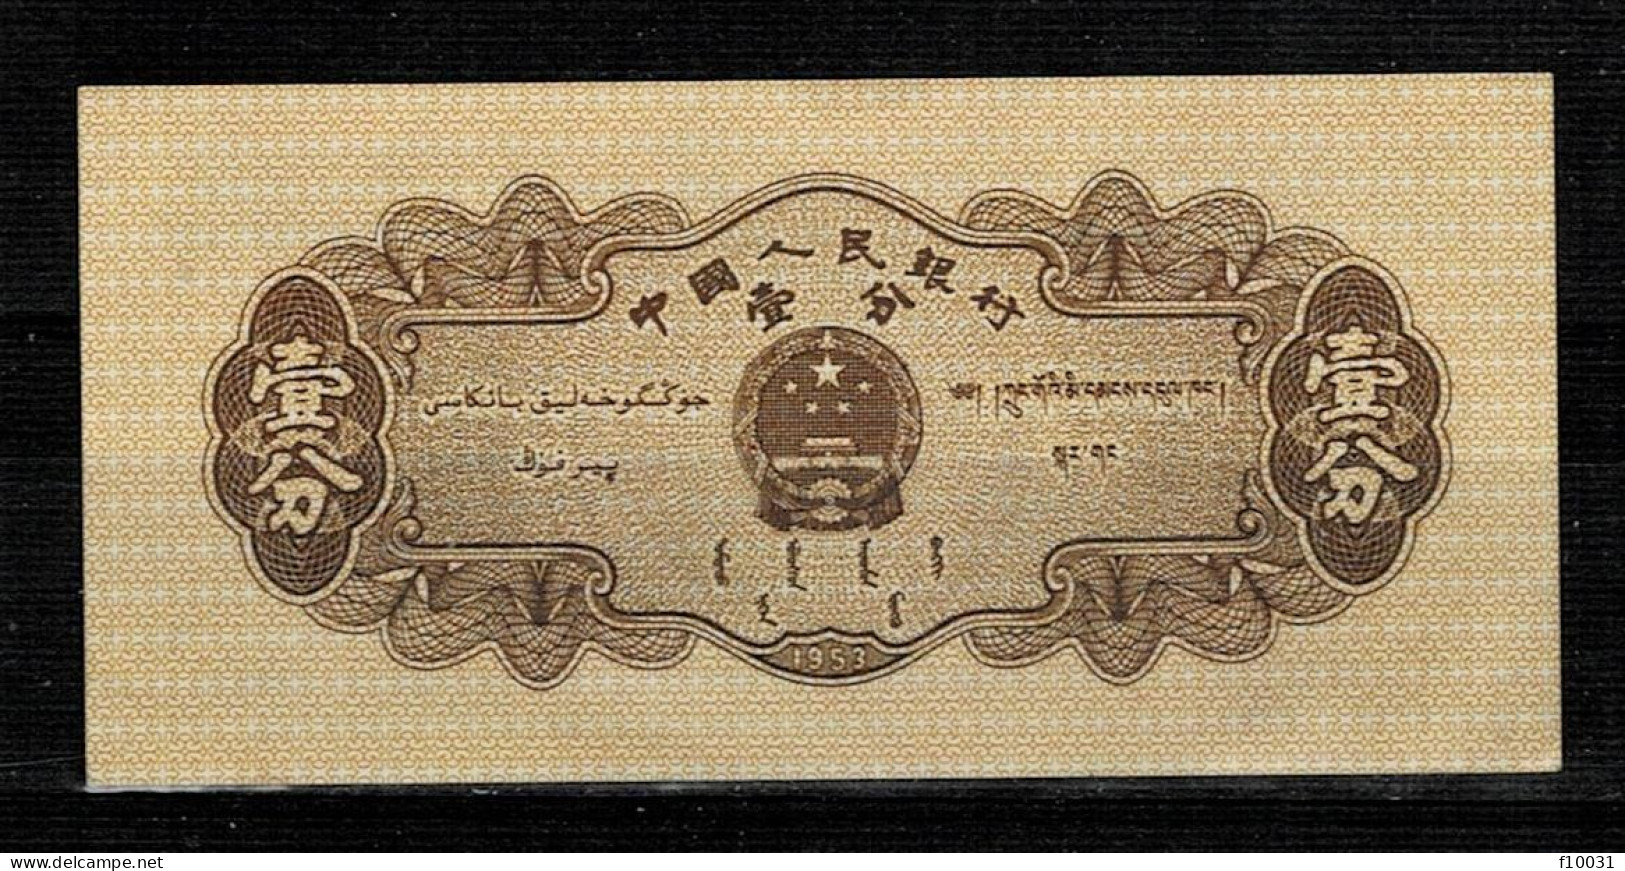 CHINE 1 FEN UNC P 860 - Lots & Kiloware - Banknotes